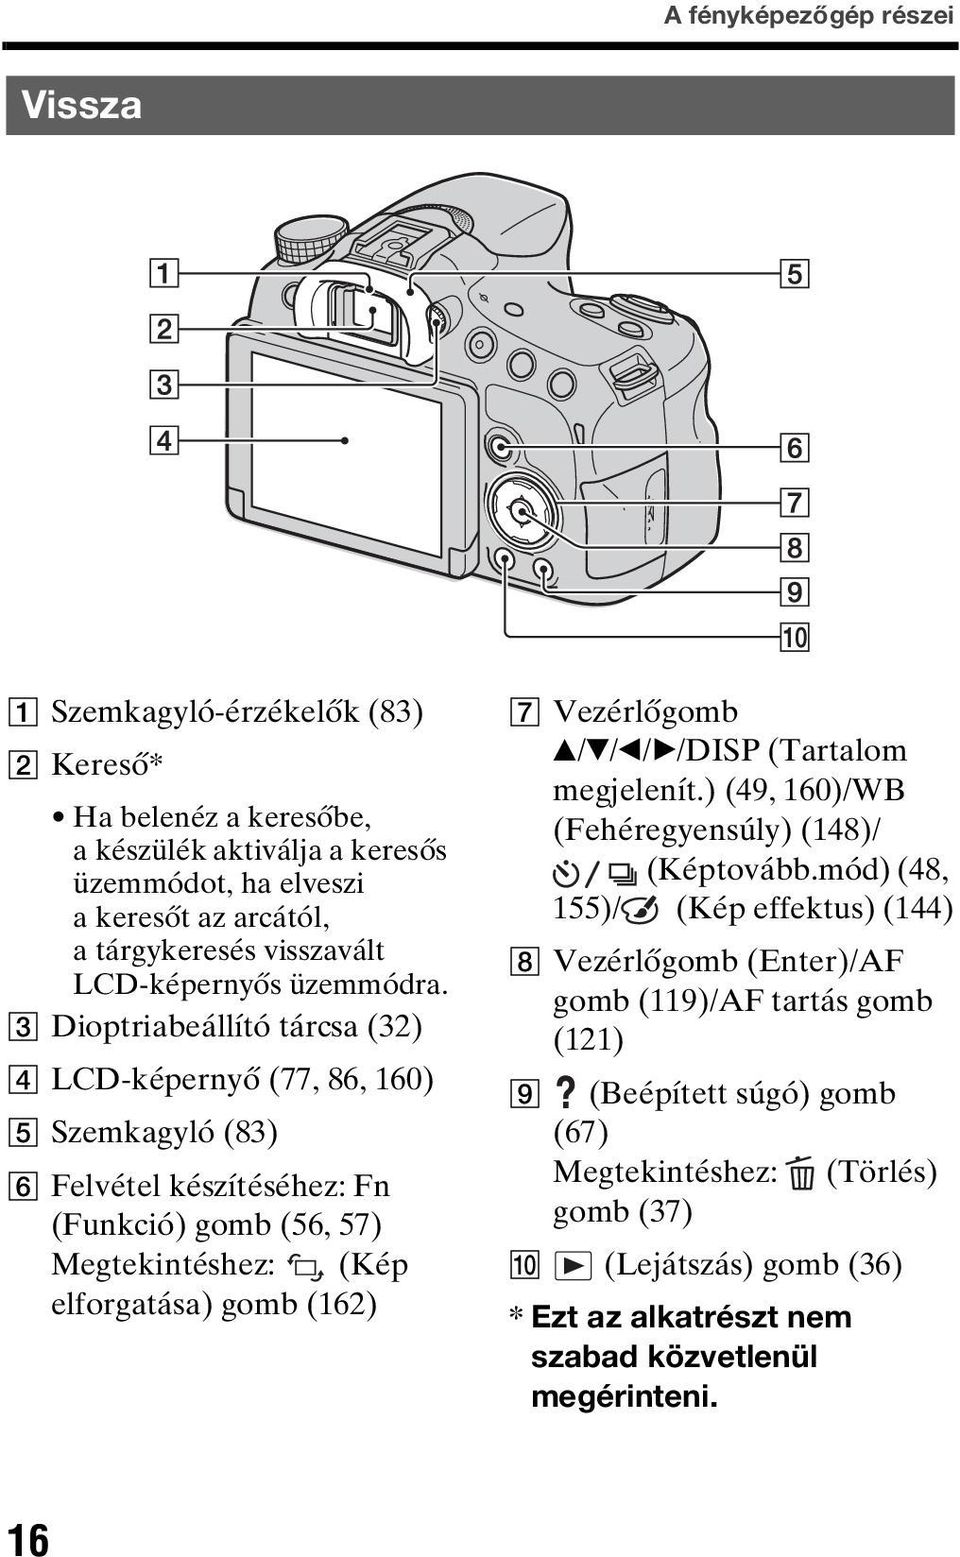 C Dioptriabeállító tárcsa (32) D LCD-képernyő (77, 86, 160) E Szemkagyló (83) F Felvétel készítéséhez: Fn (Funkció) gomb (56, 57) Megtekintéshez: (Kép elforgatása) gomb (162) G